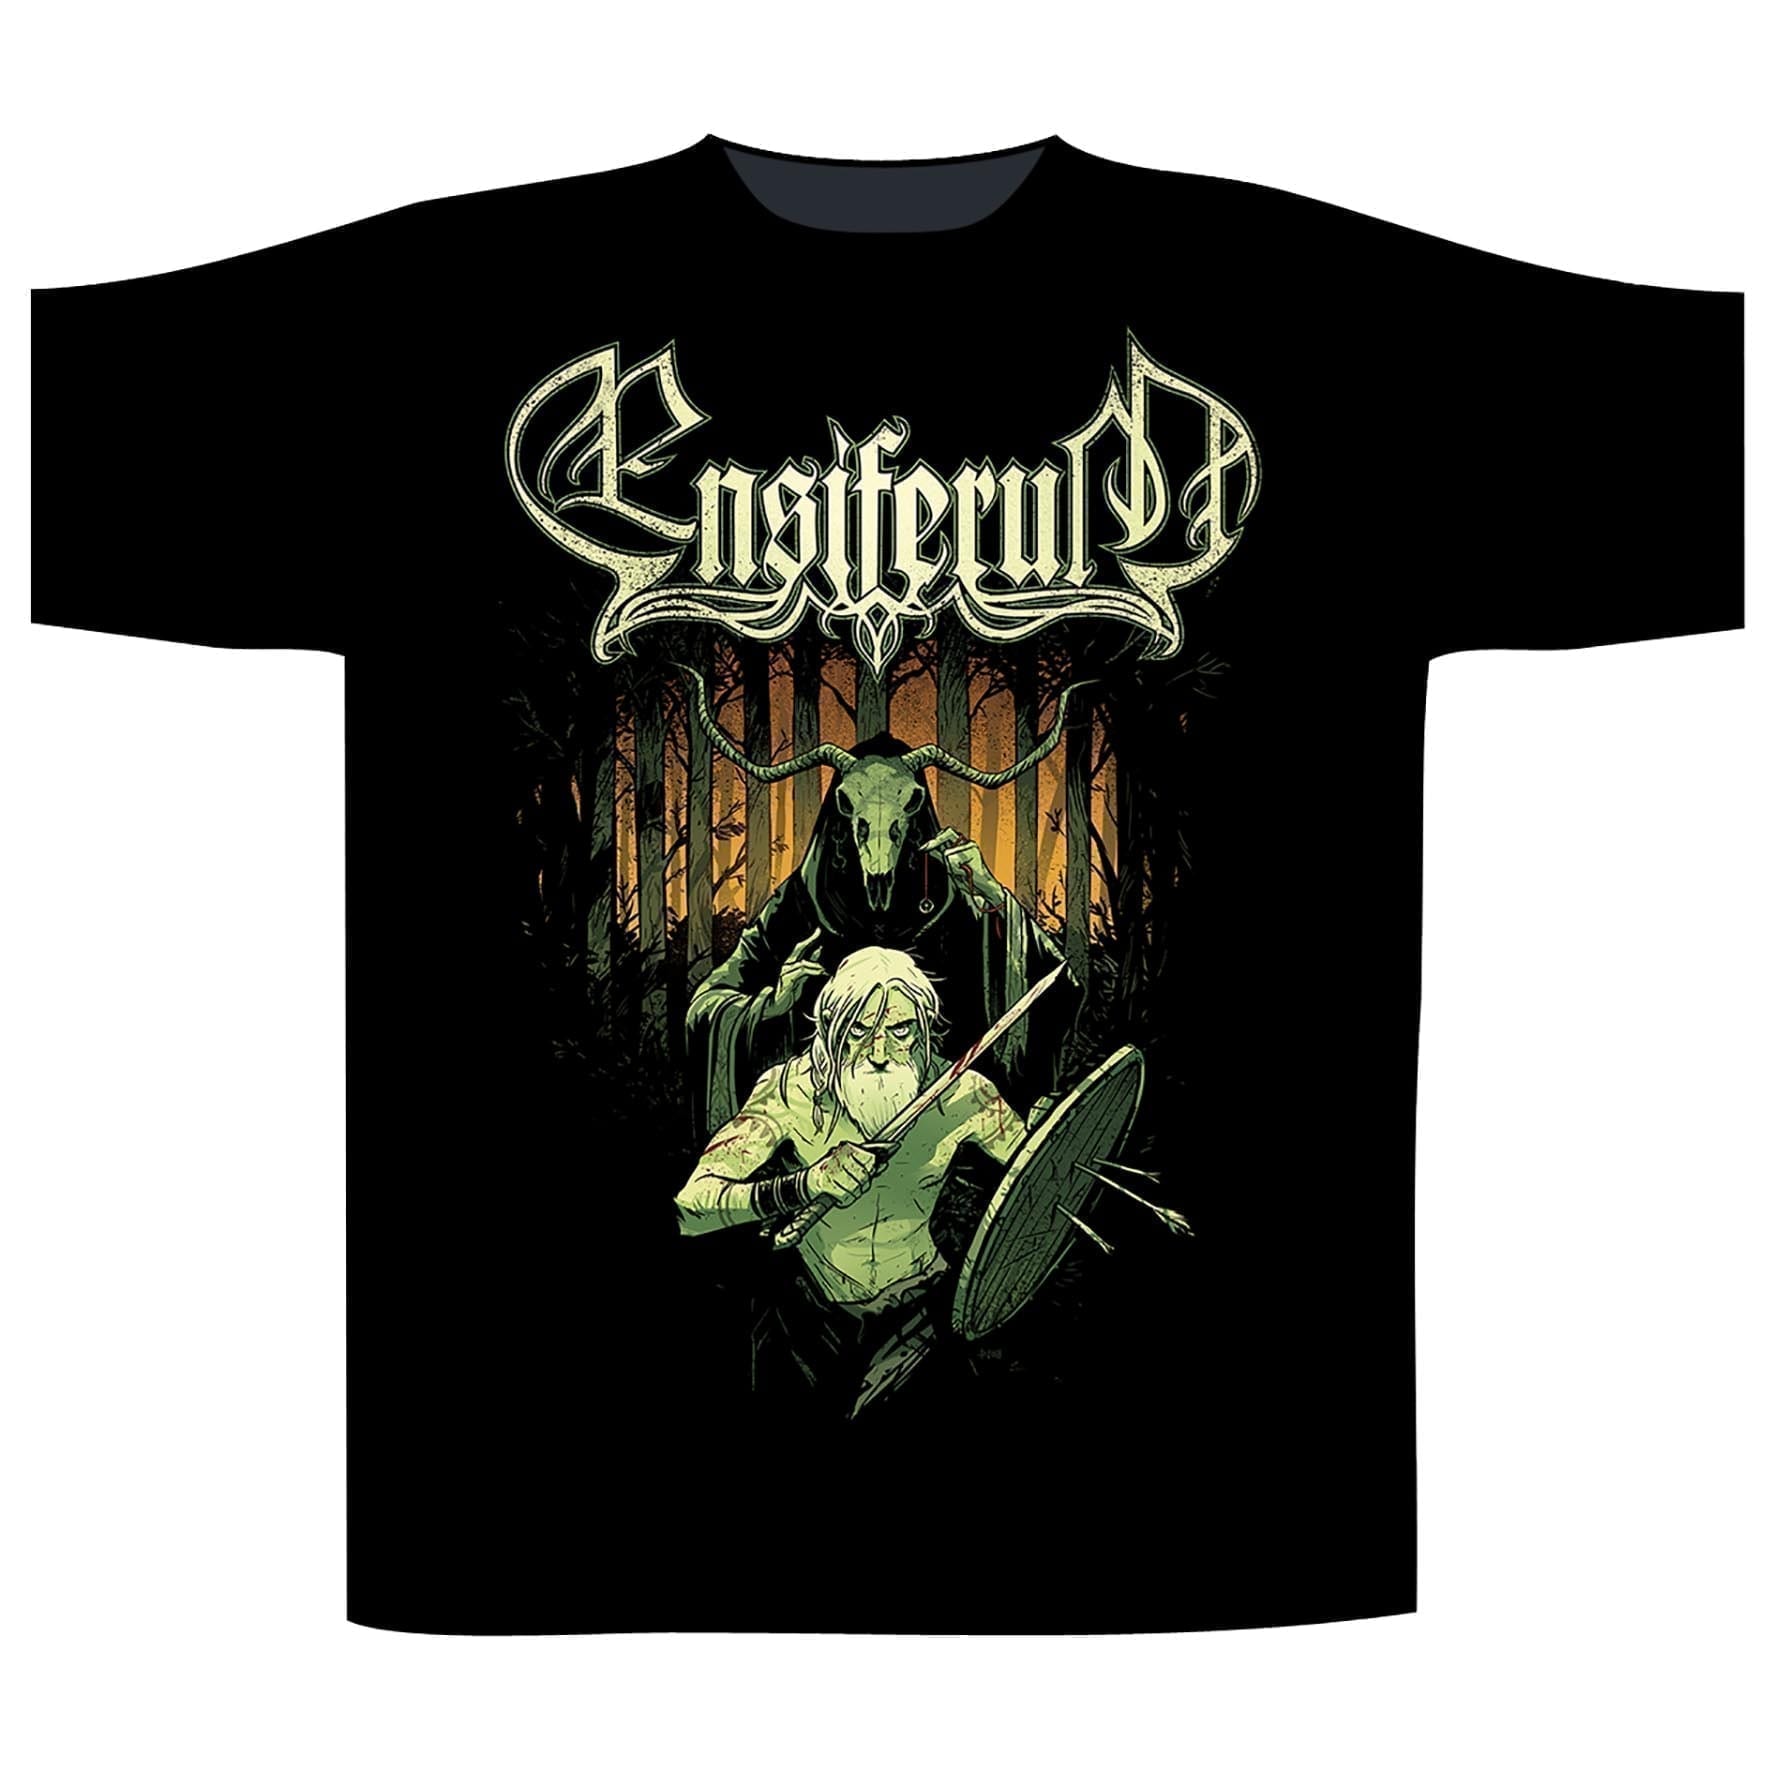 Ensiferum 'Shaman' T-Shirt - HMOL